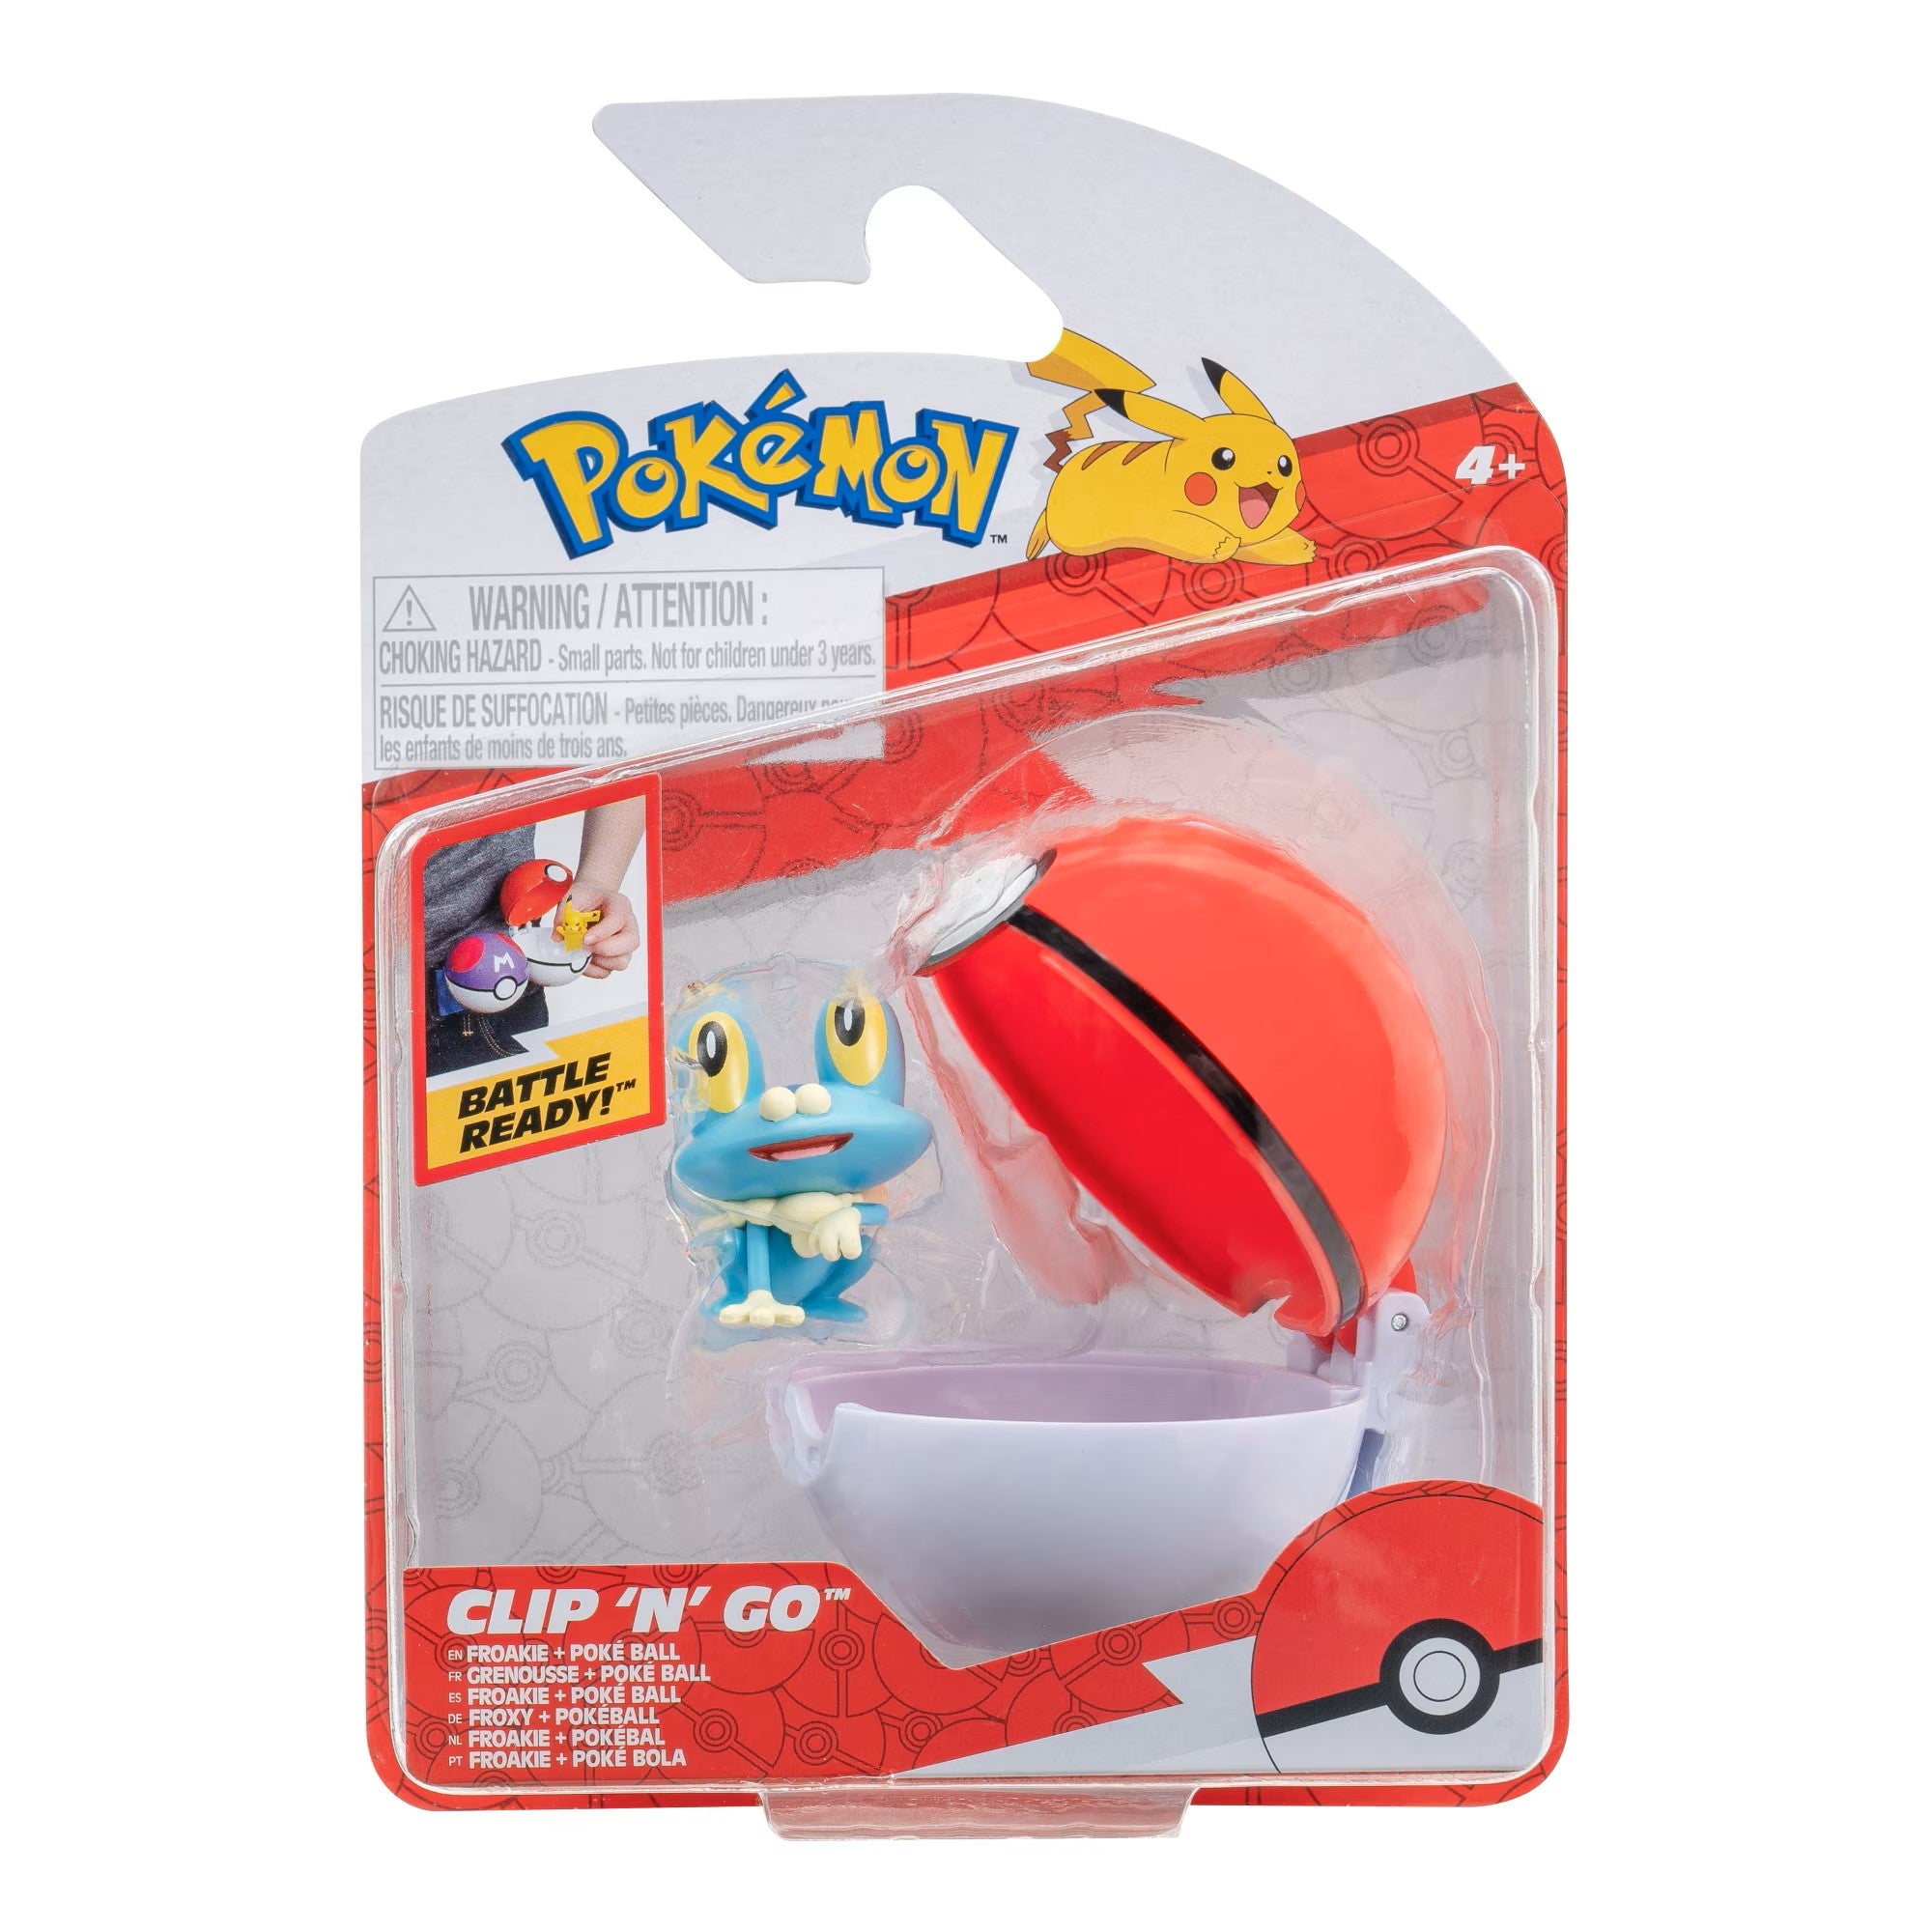 Pokemon Figurine - Clip 'N' Go - Froakie + Poké Ball - Jazwares